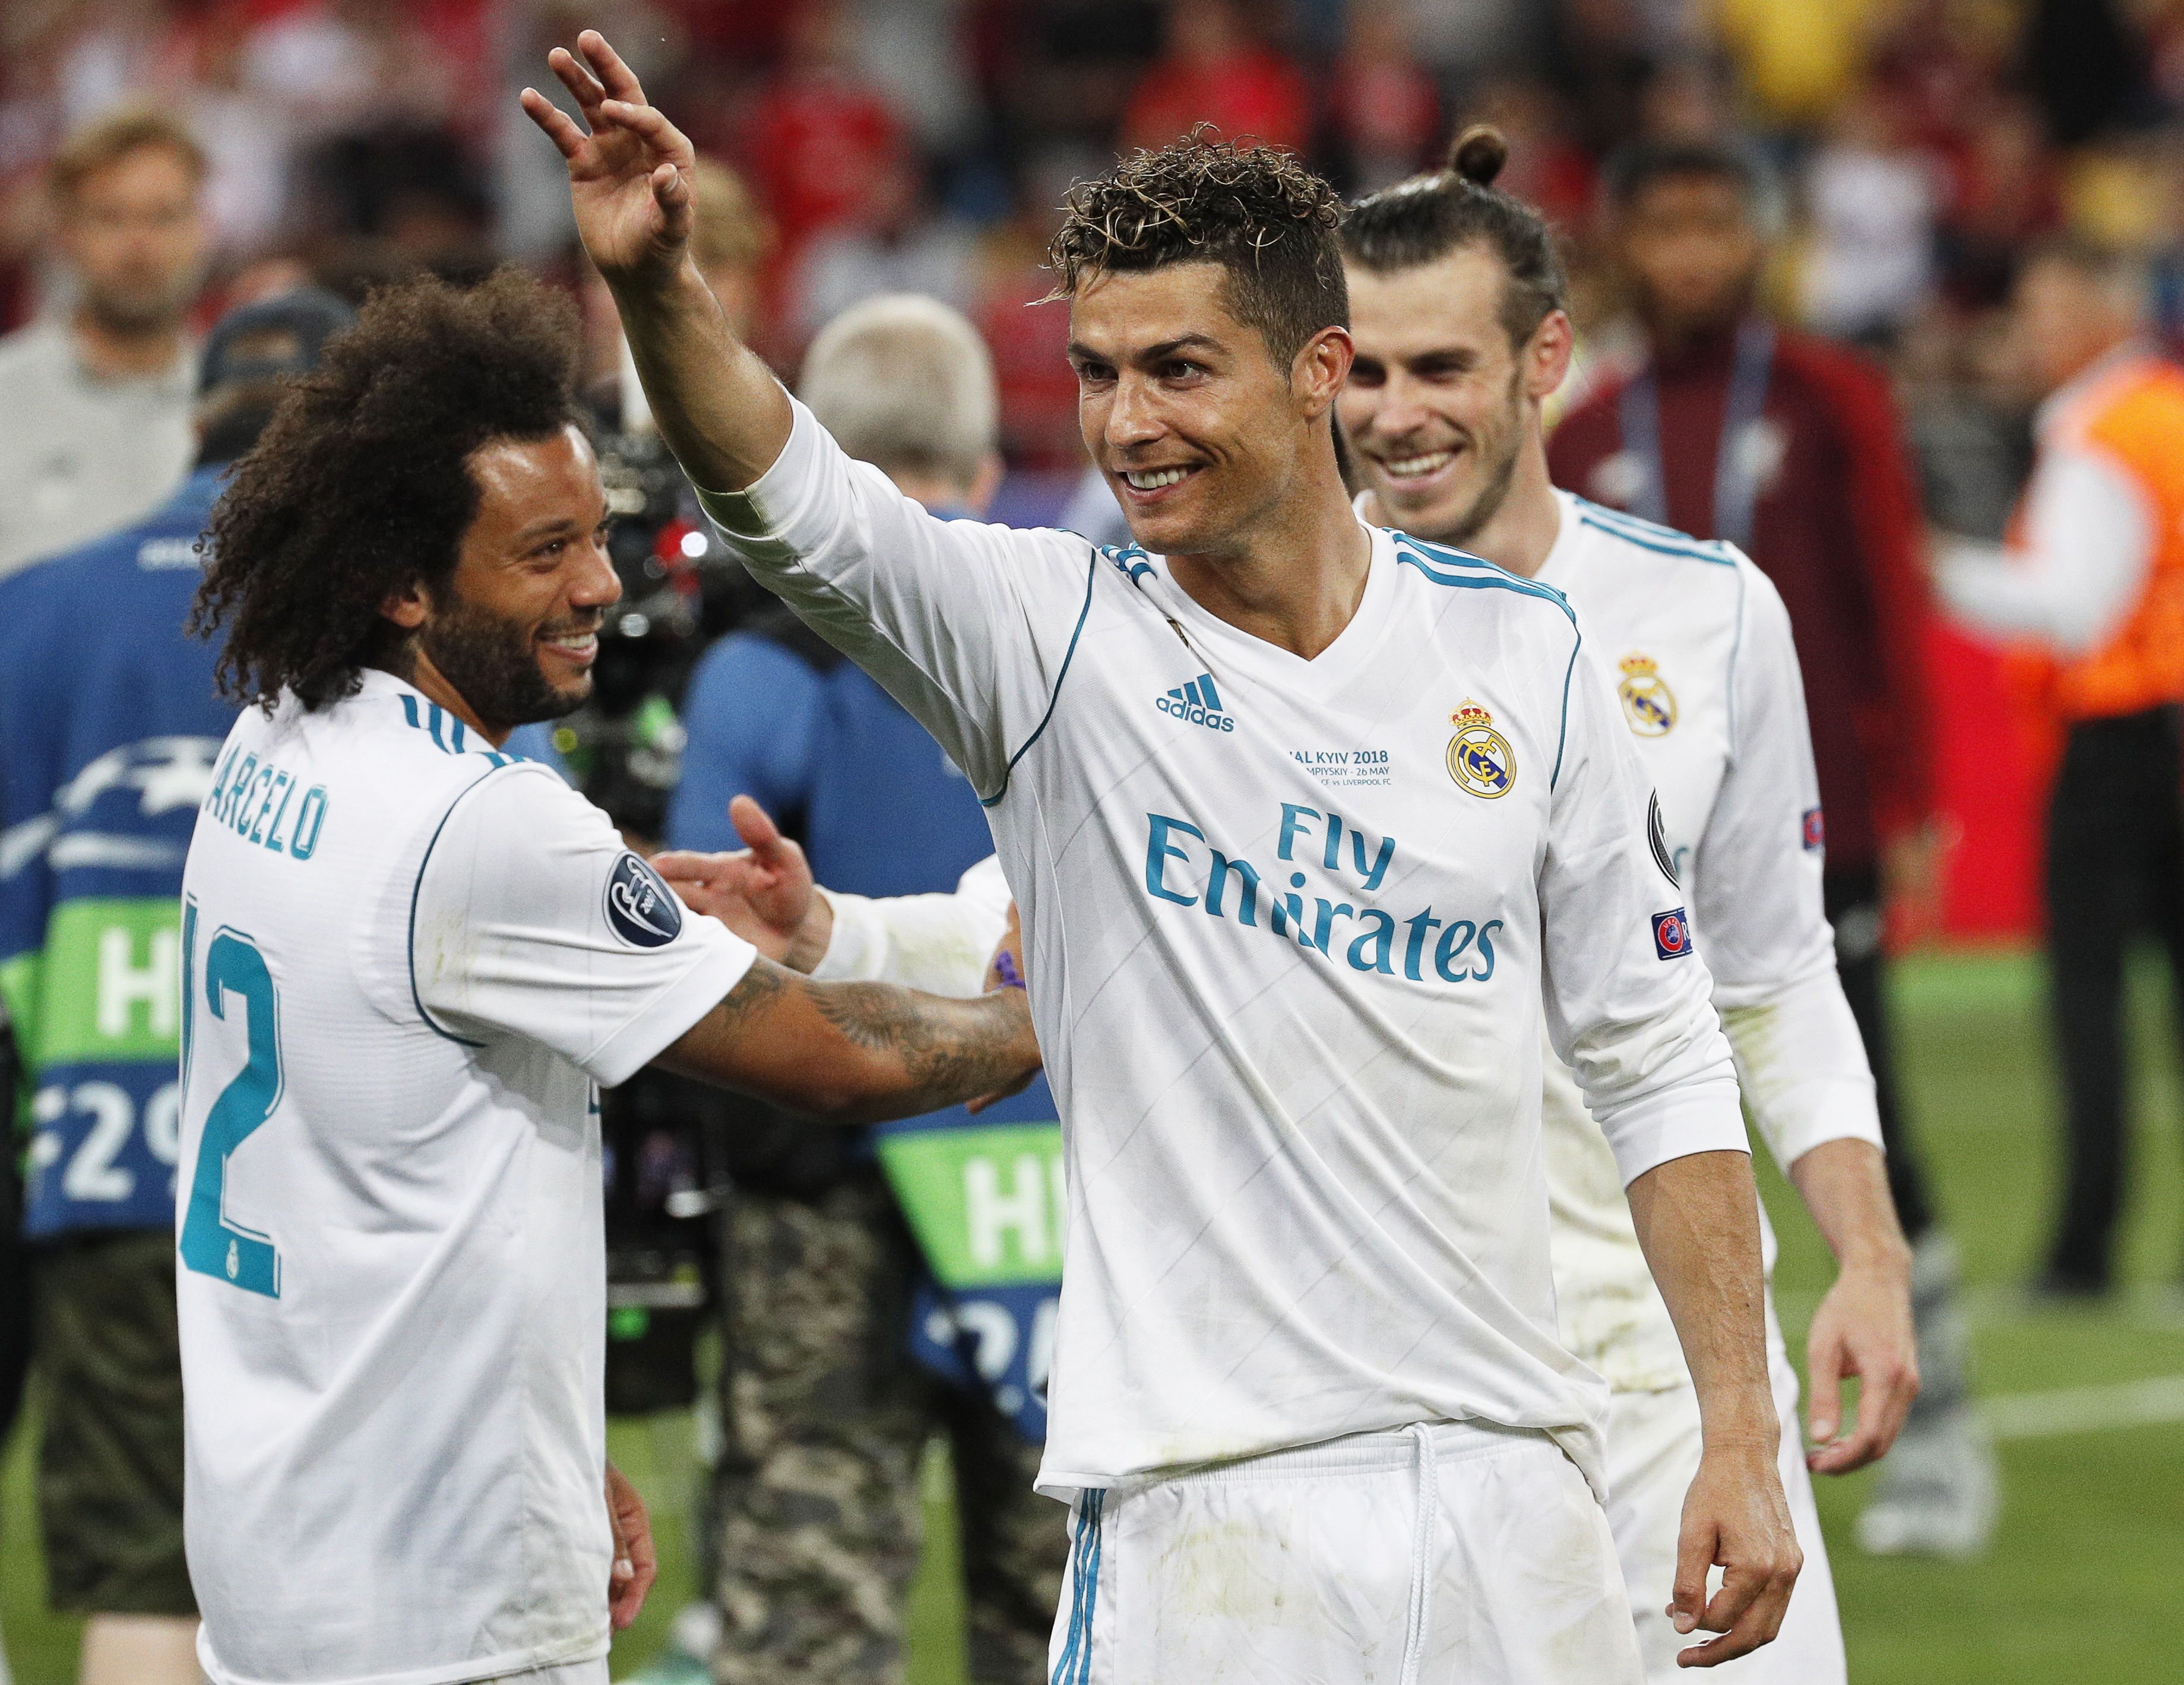 Cristiano Ronaldo deixa el Reial Madrid, segons premsa portuguesa